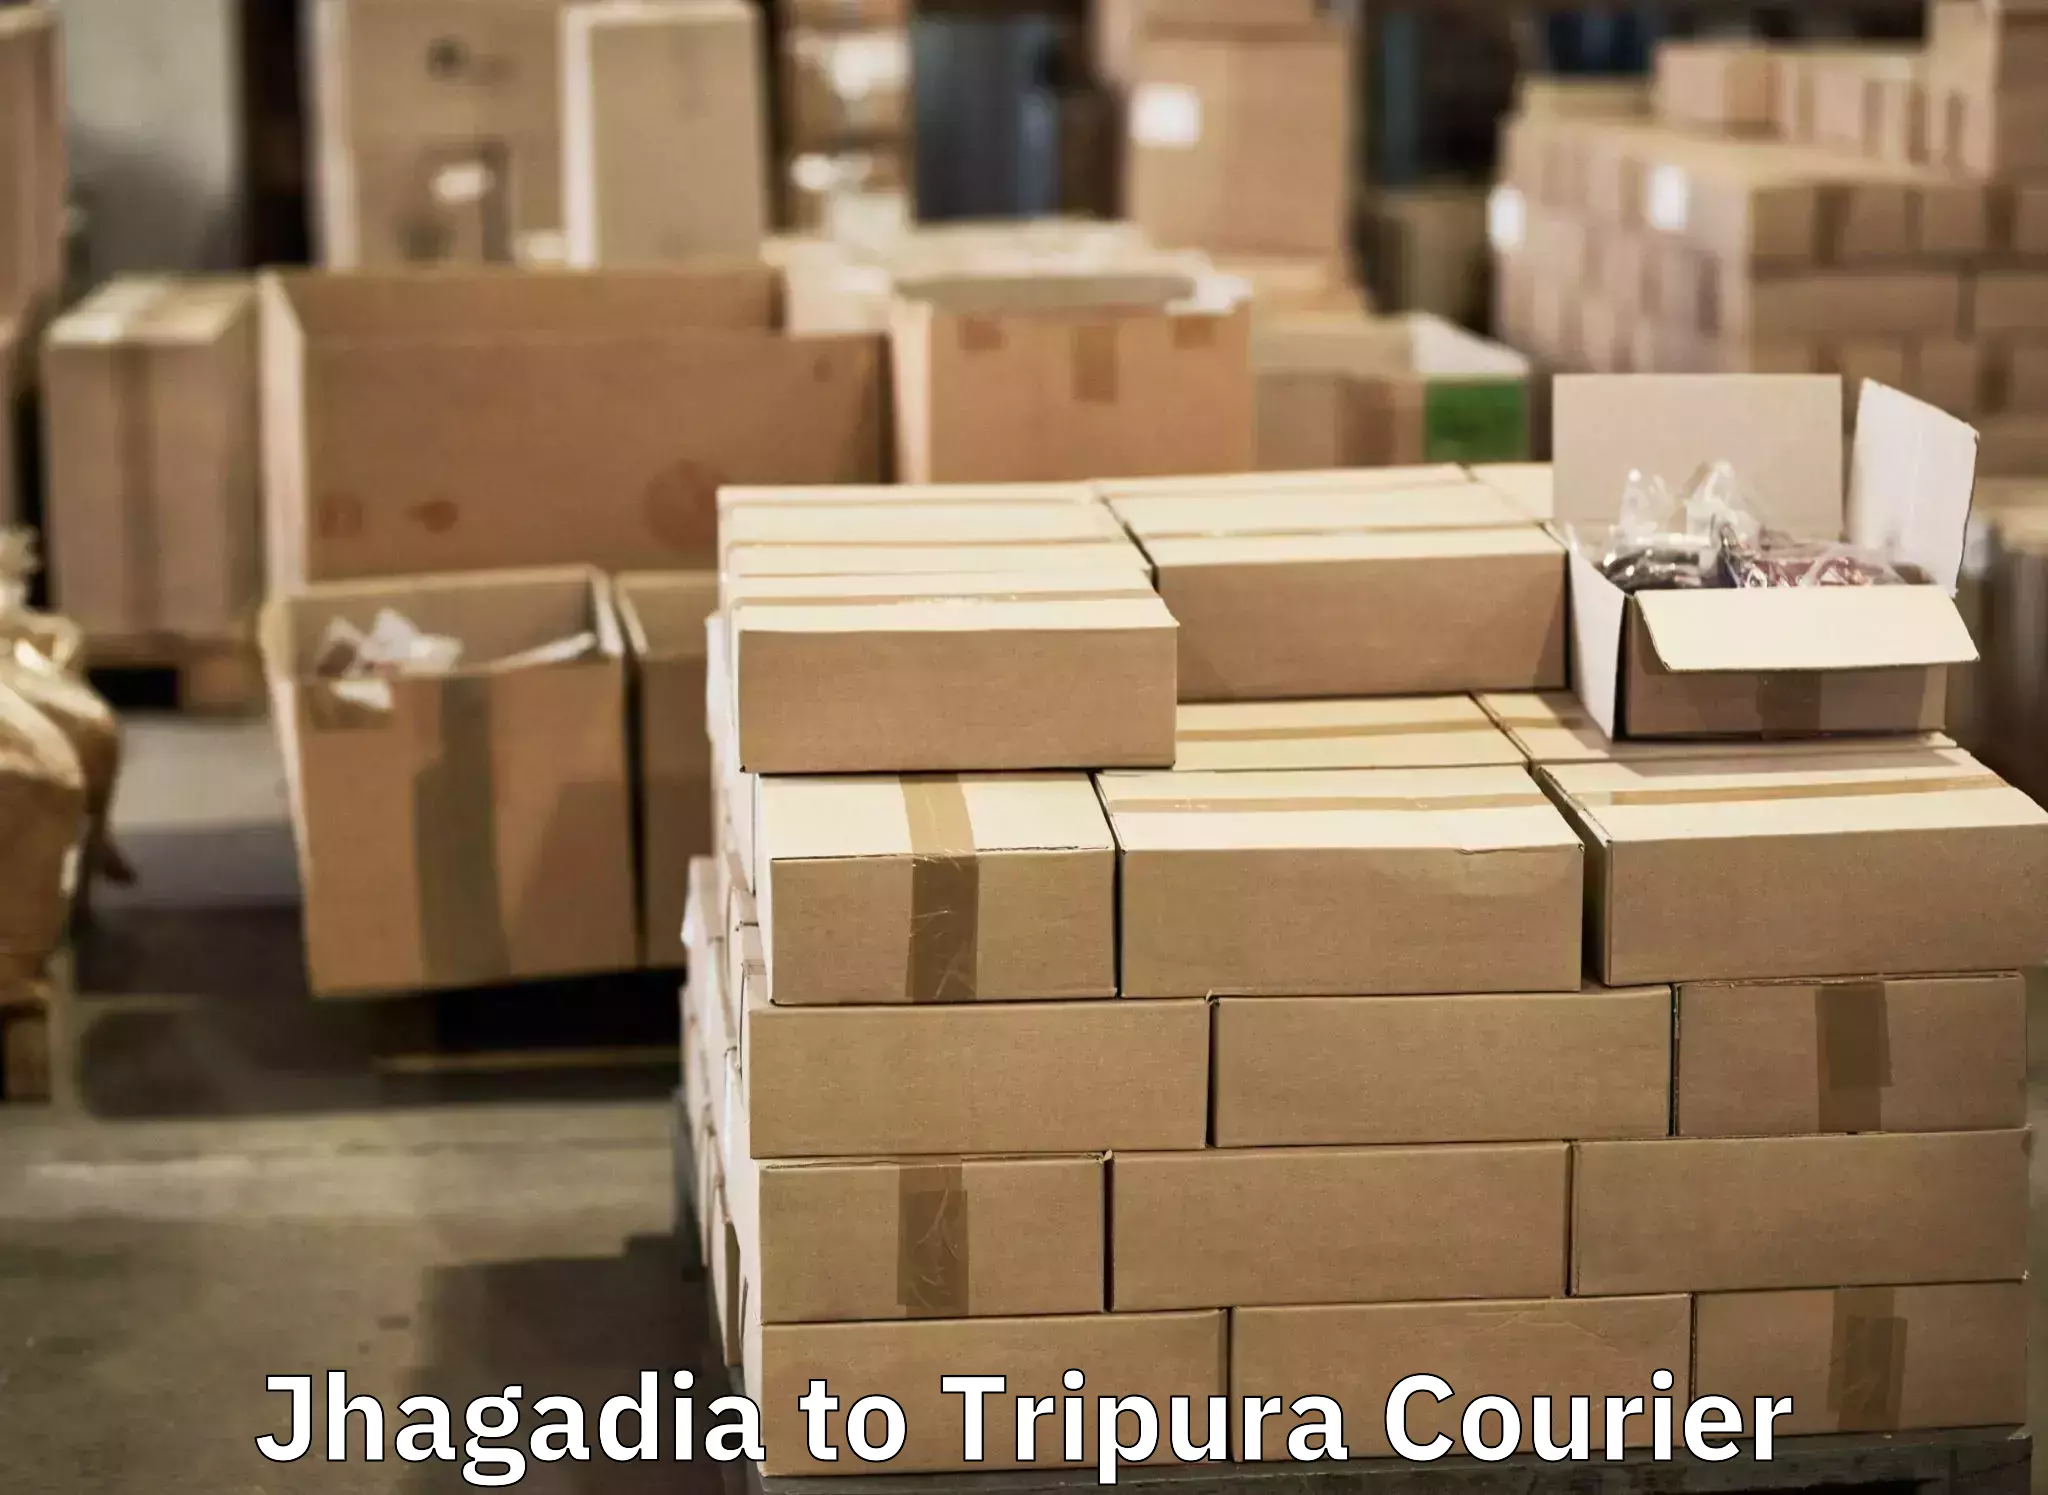 Express baggage shipping Jhagadia to Udaipur Tripura